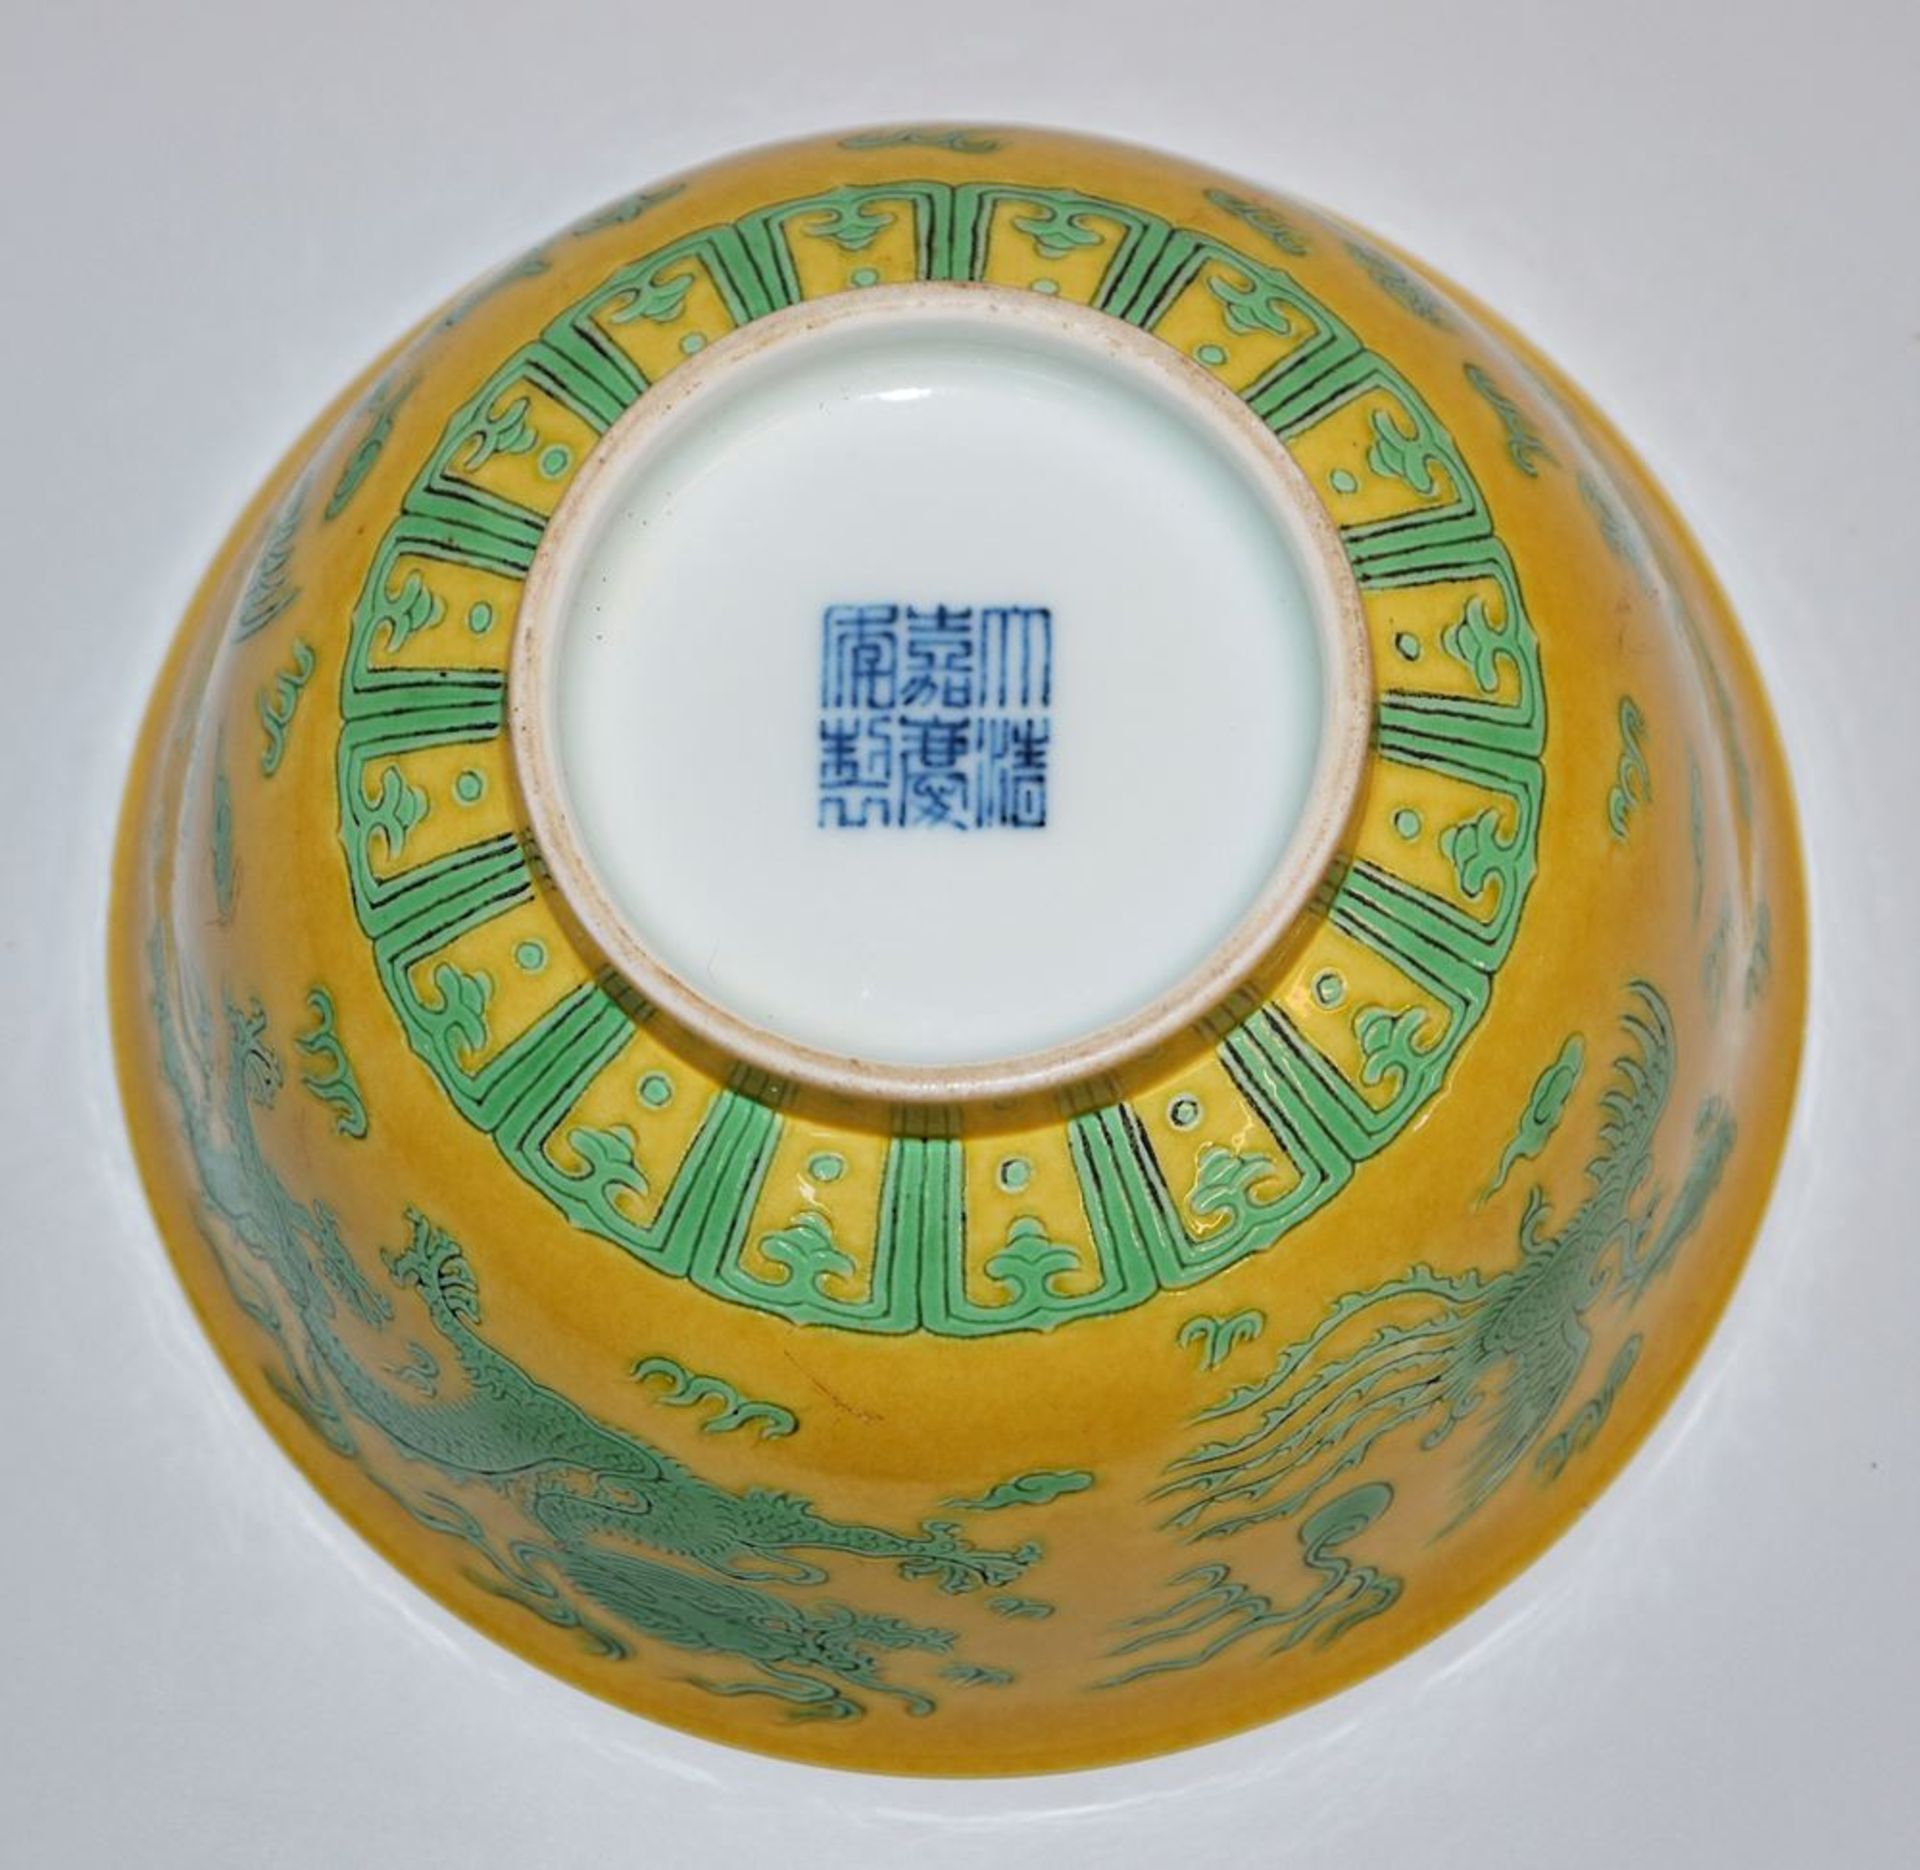 Feine Porzellanschale in kaiserlichem Gelb, China 20. Jh. - Bild 3 aus 3